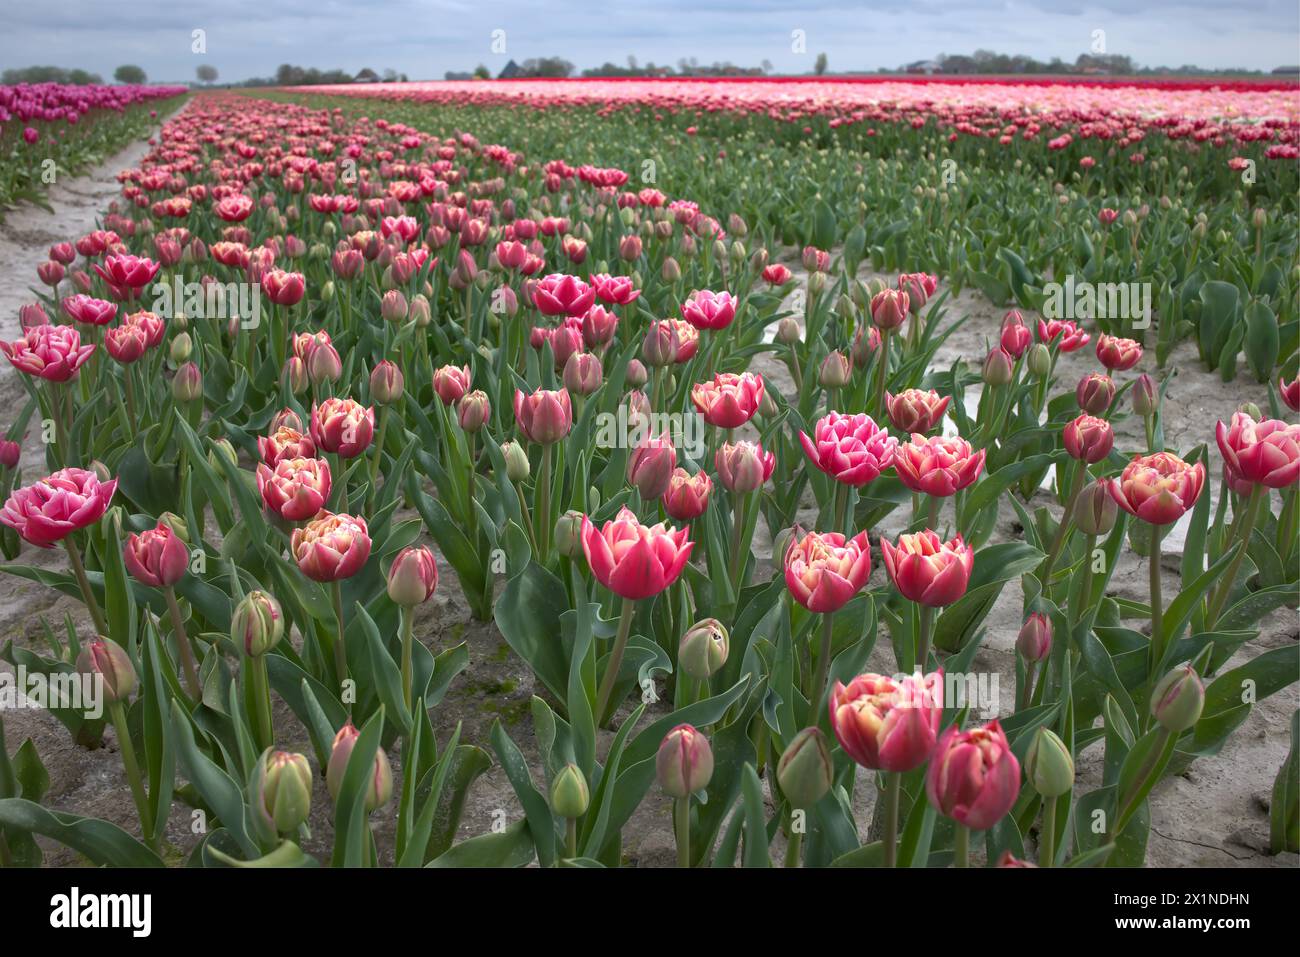 Tulpenveld met heel veel mooie kleuren en soorten. Stock Photo